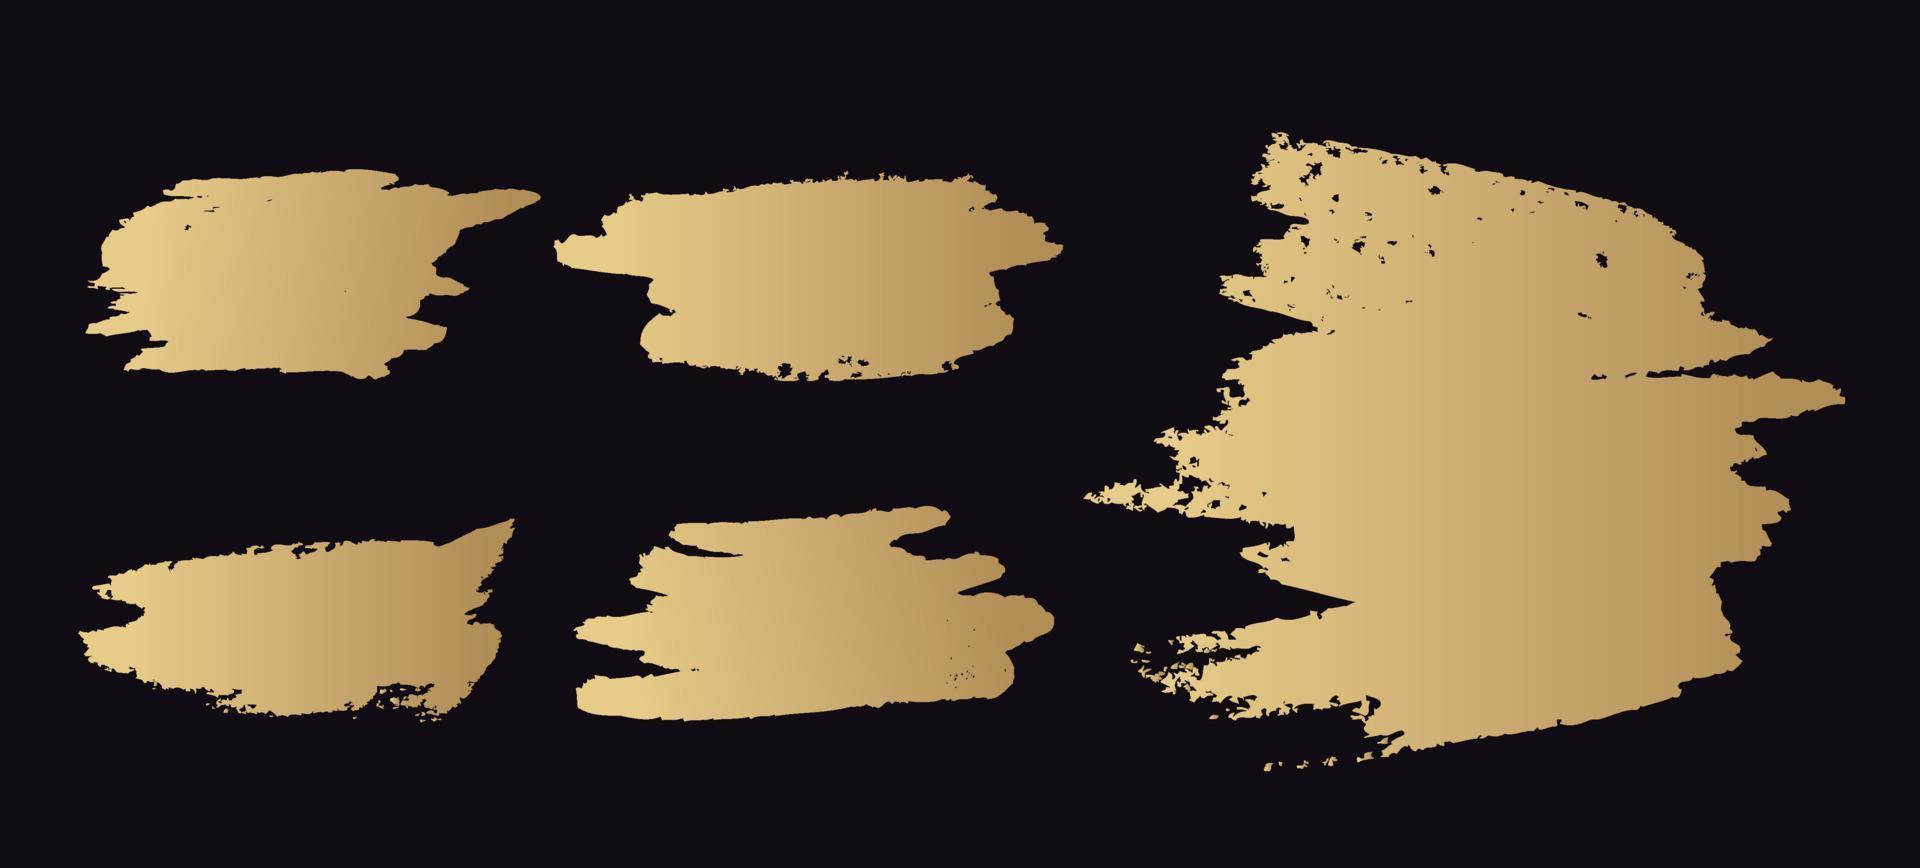 Grunge, schmutziger Pinsel, schwarze Farbe, Striche. handgezeichnete Abbildung vektor